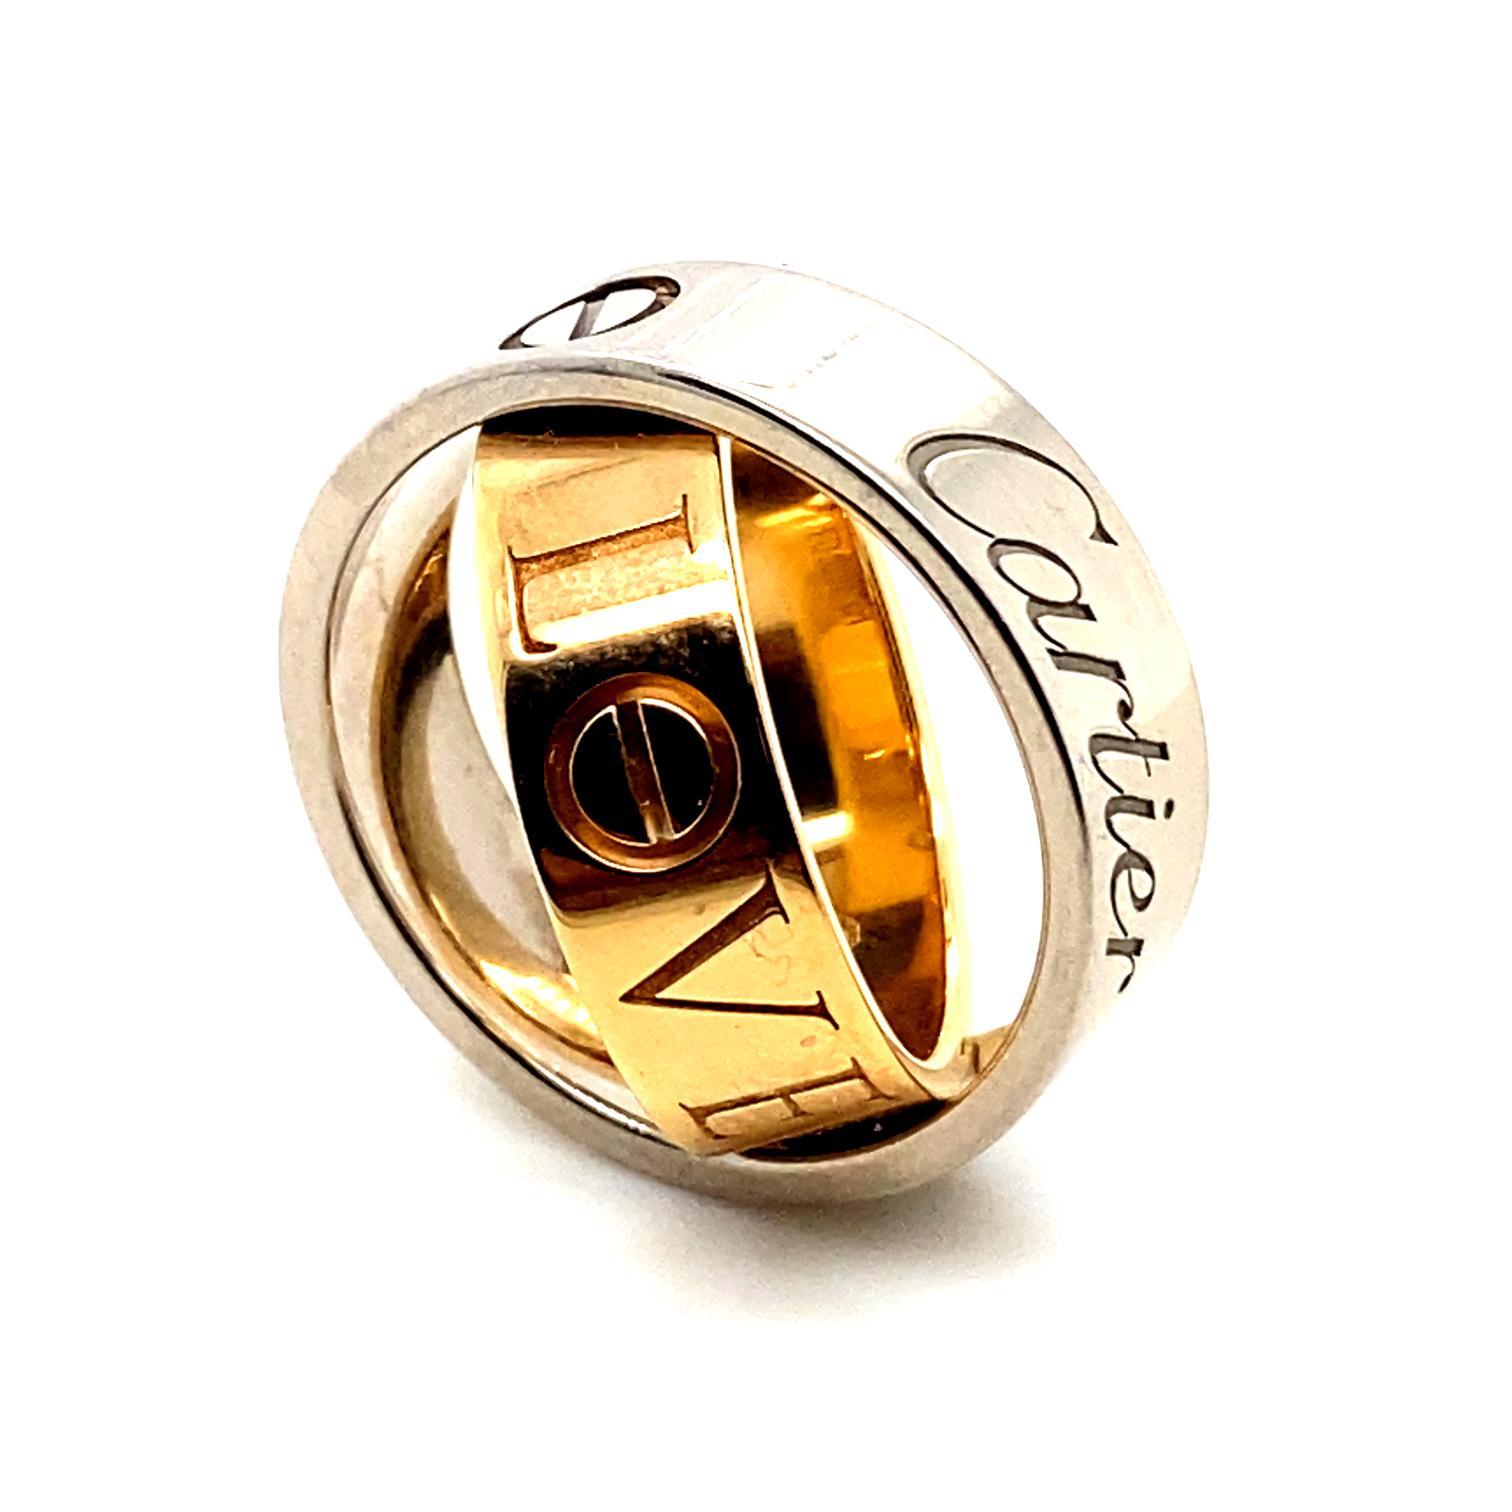 Ein Vintage Essence De Cartier Love Ring aus 18 Karat Weiß- und Roségold

Der Ring ist als zwei klassische Liebesringe mit identischer Breite gestaltet. Das innere Band aus Roségold ist mit einem Scharnier mit dem äußeren Band aus Weißgold